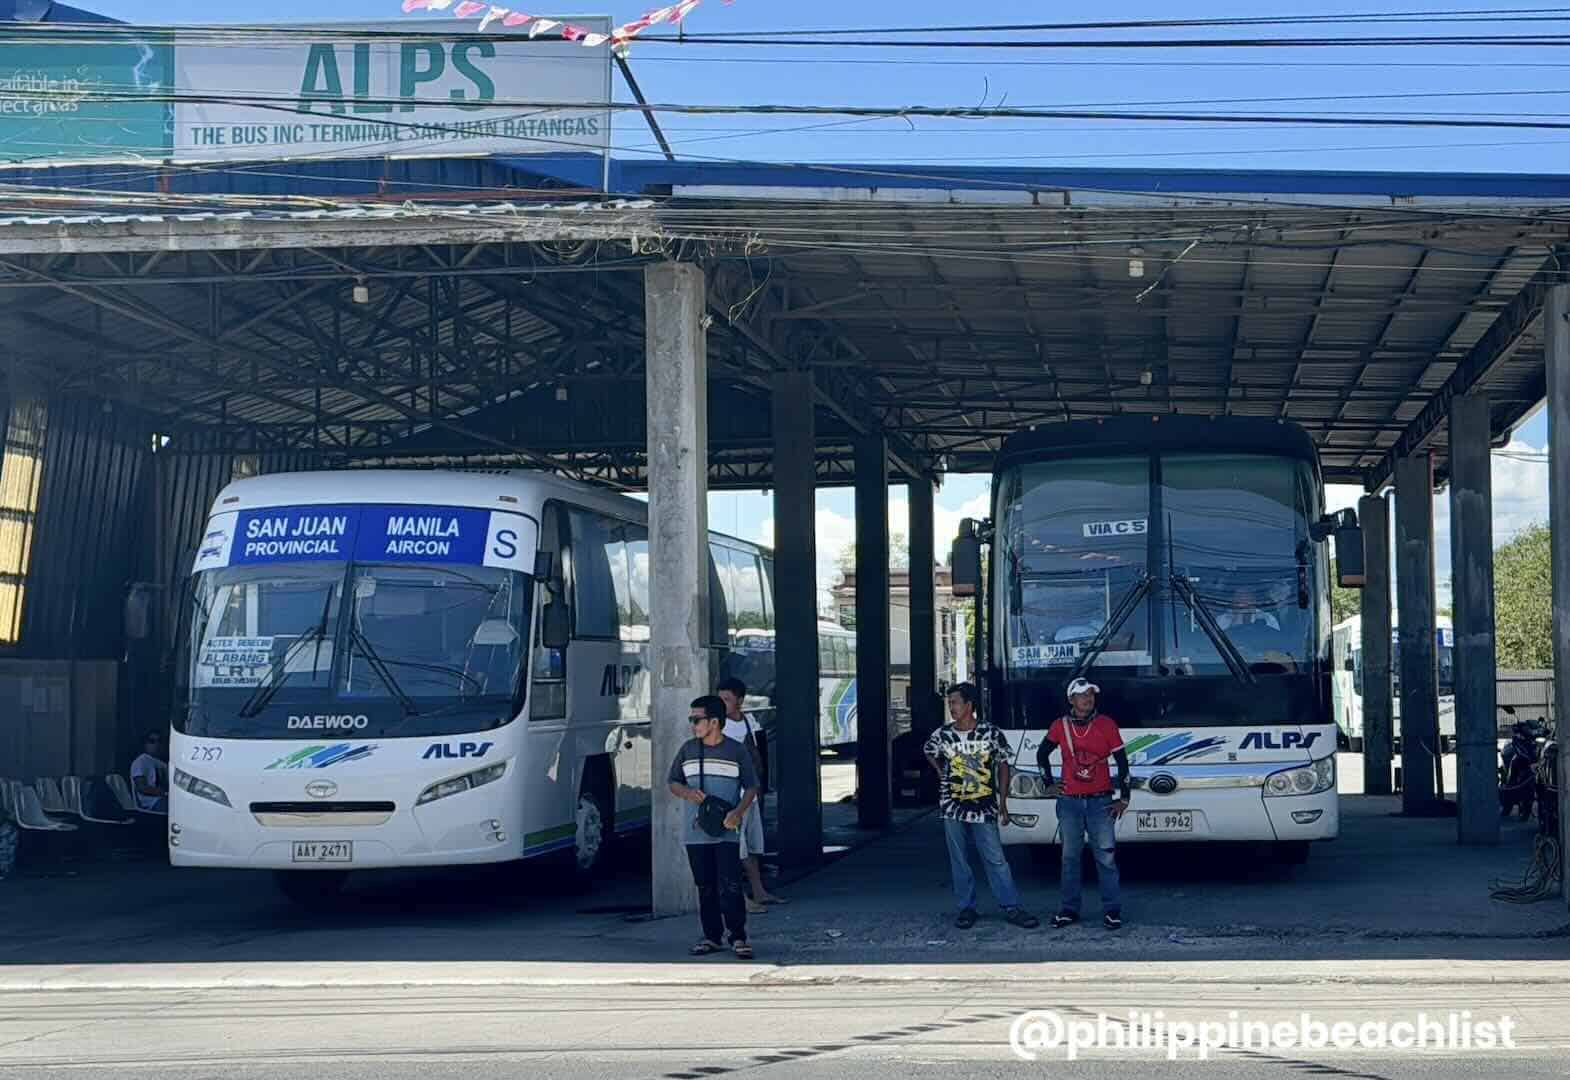 Alps San Juan Batangas Bus Terminal